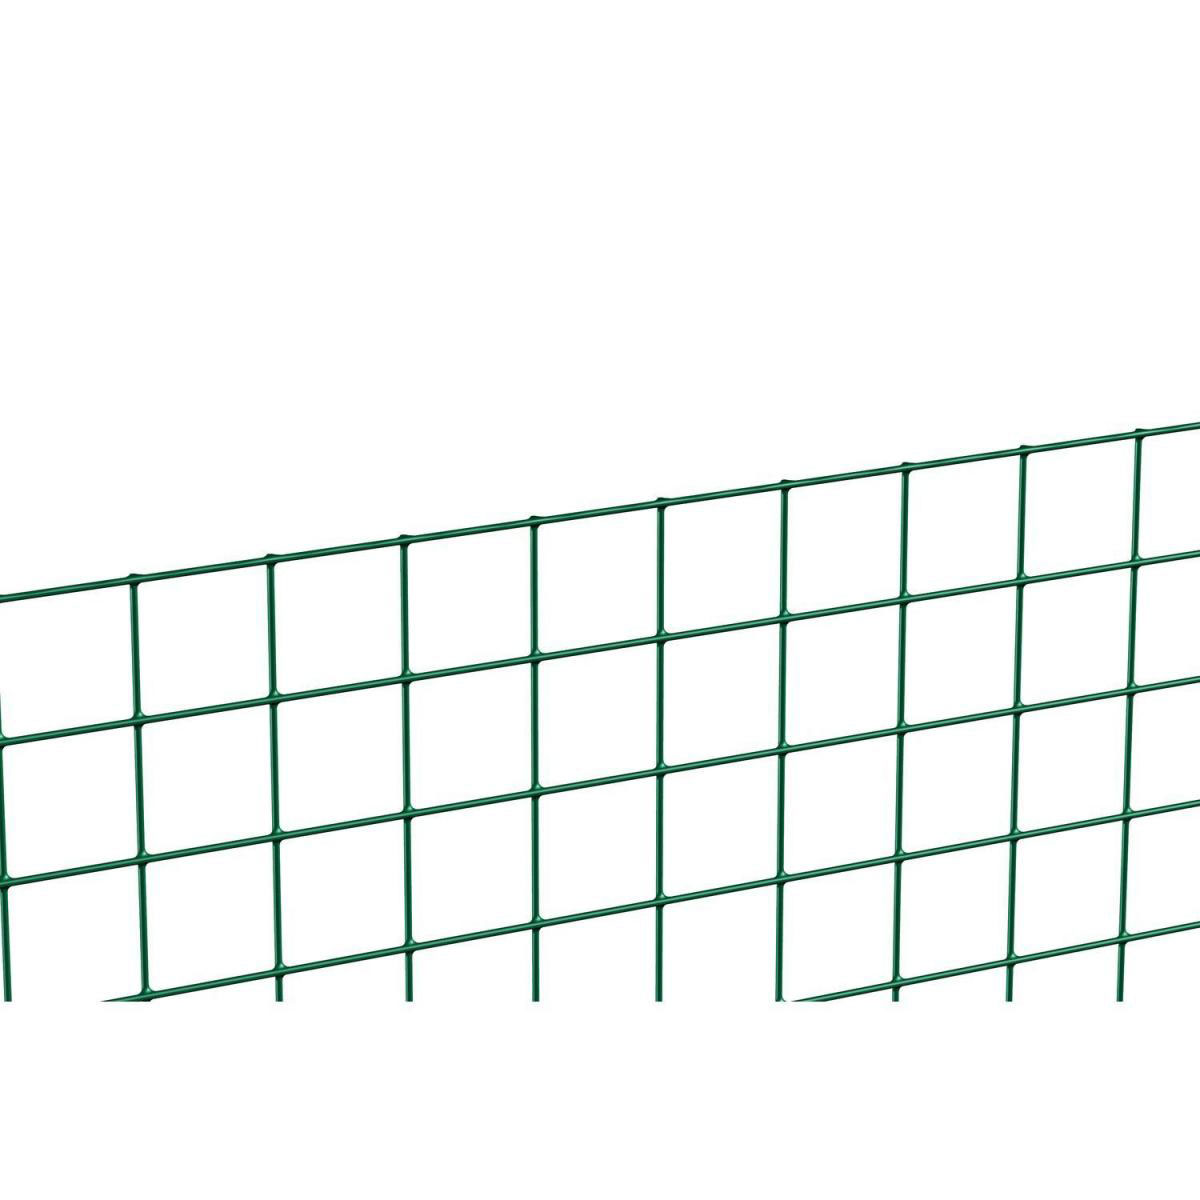 Schweißgitter grün, Länge 5 Meter, Höhe 100 cm, Masche 12,7x12,7 mm